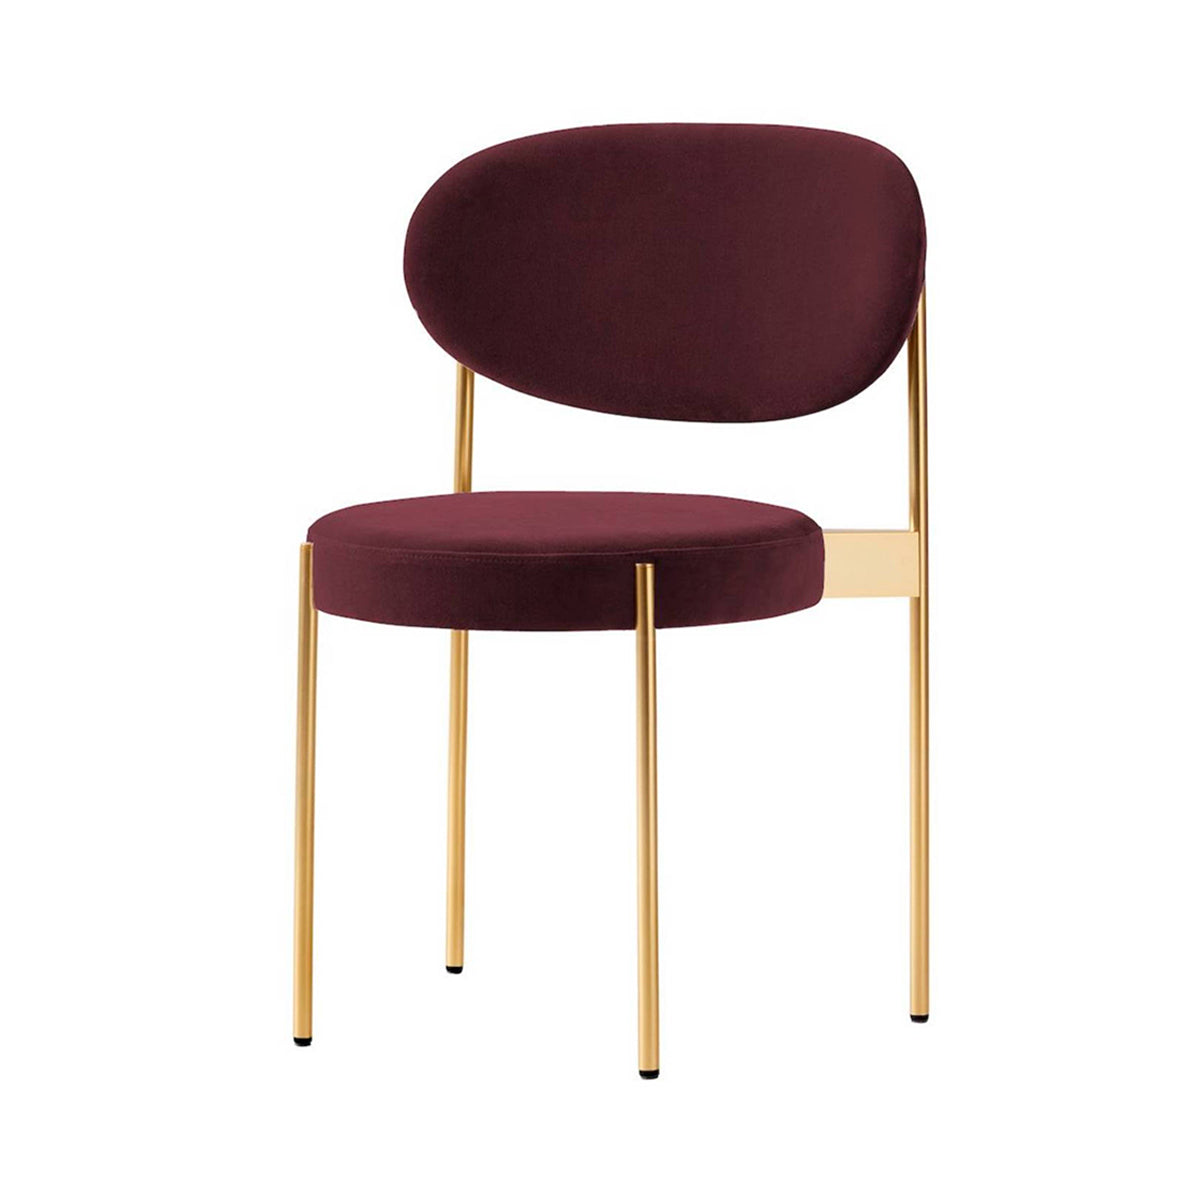 Series 430 Chair: Brass